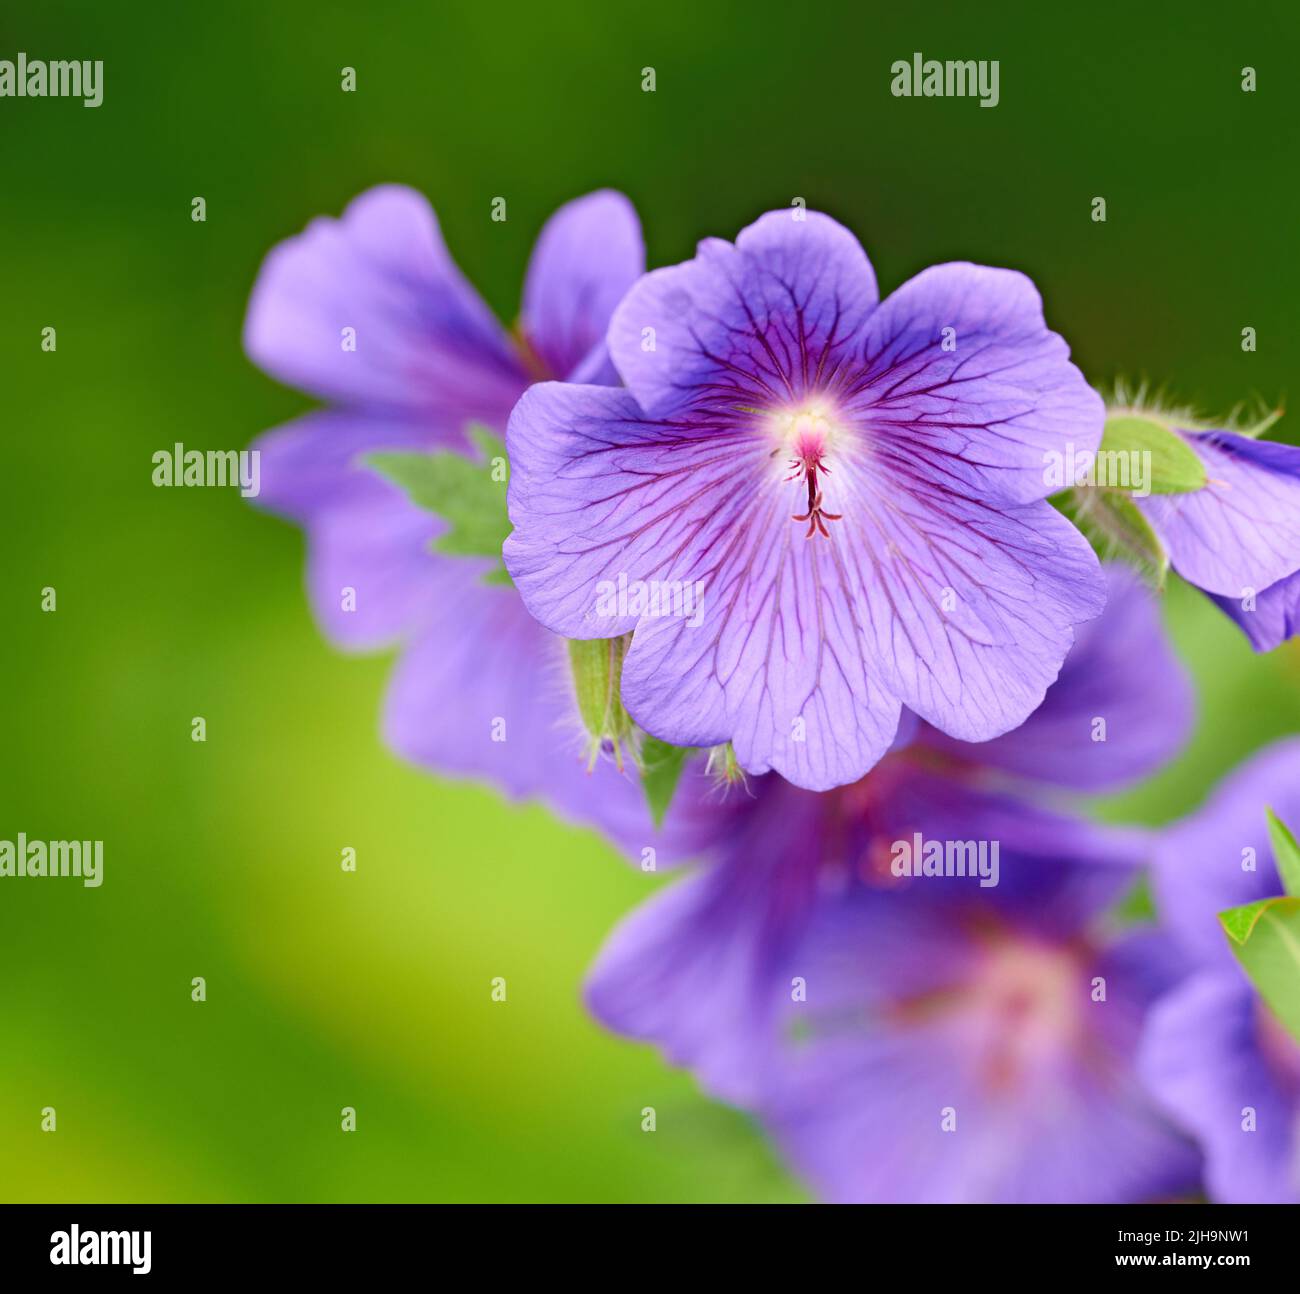 Nahaufnahme von lila Cranesbill Blumen auf grünem Hintergrund. Blütenblatt Details der mehrjährigen Geranium blühenden Pflanze, die in einem Garten wächst. Ziemlich farbenfroh Stockfoto